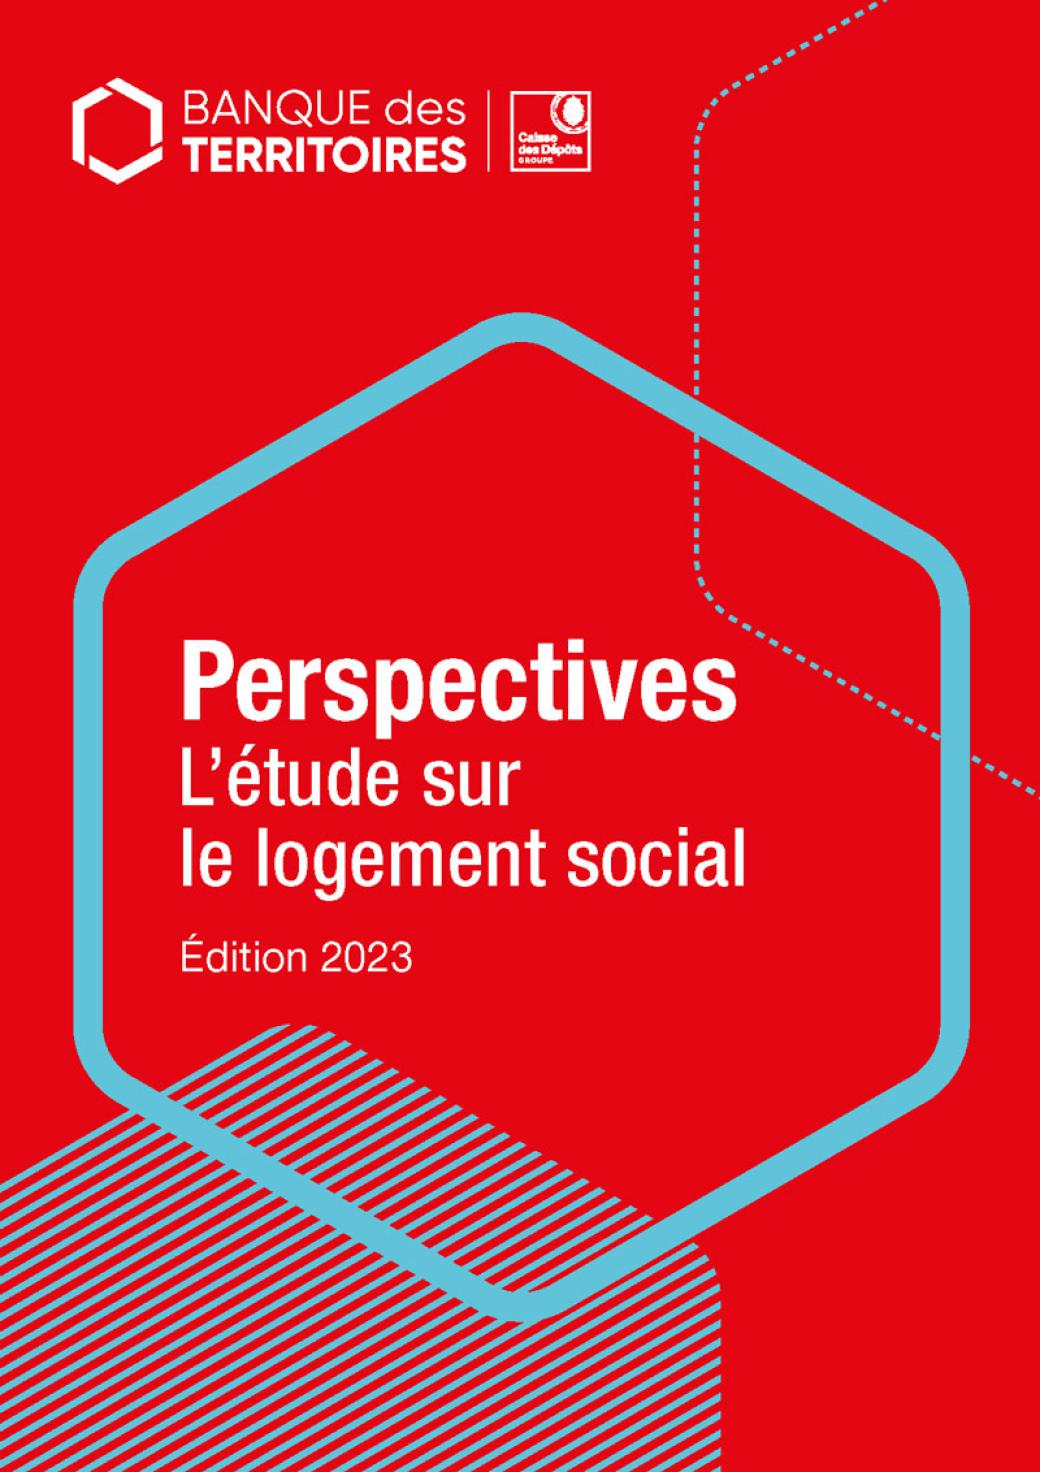 Perspectives L'étude sur le logement social Edition 2023